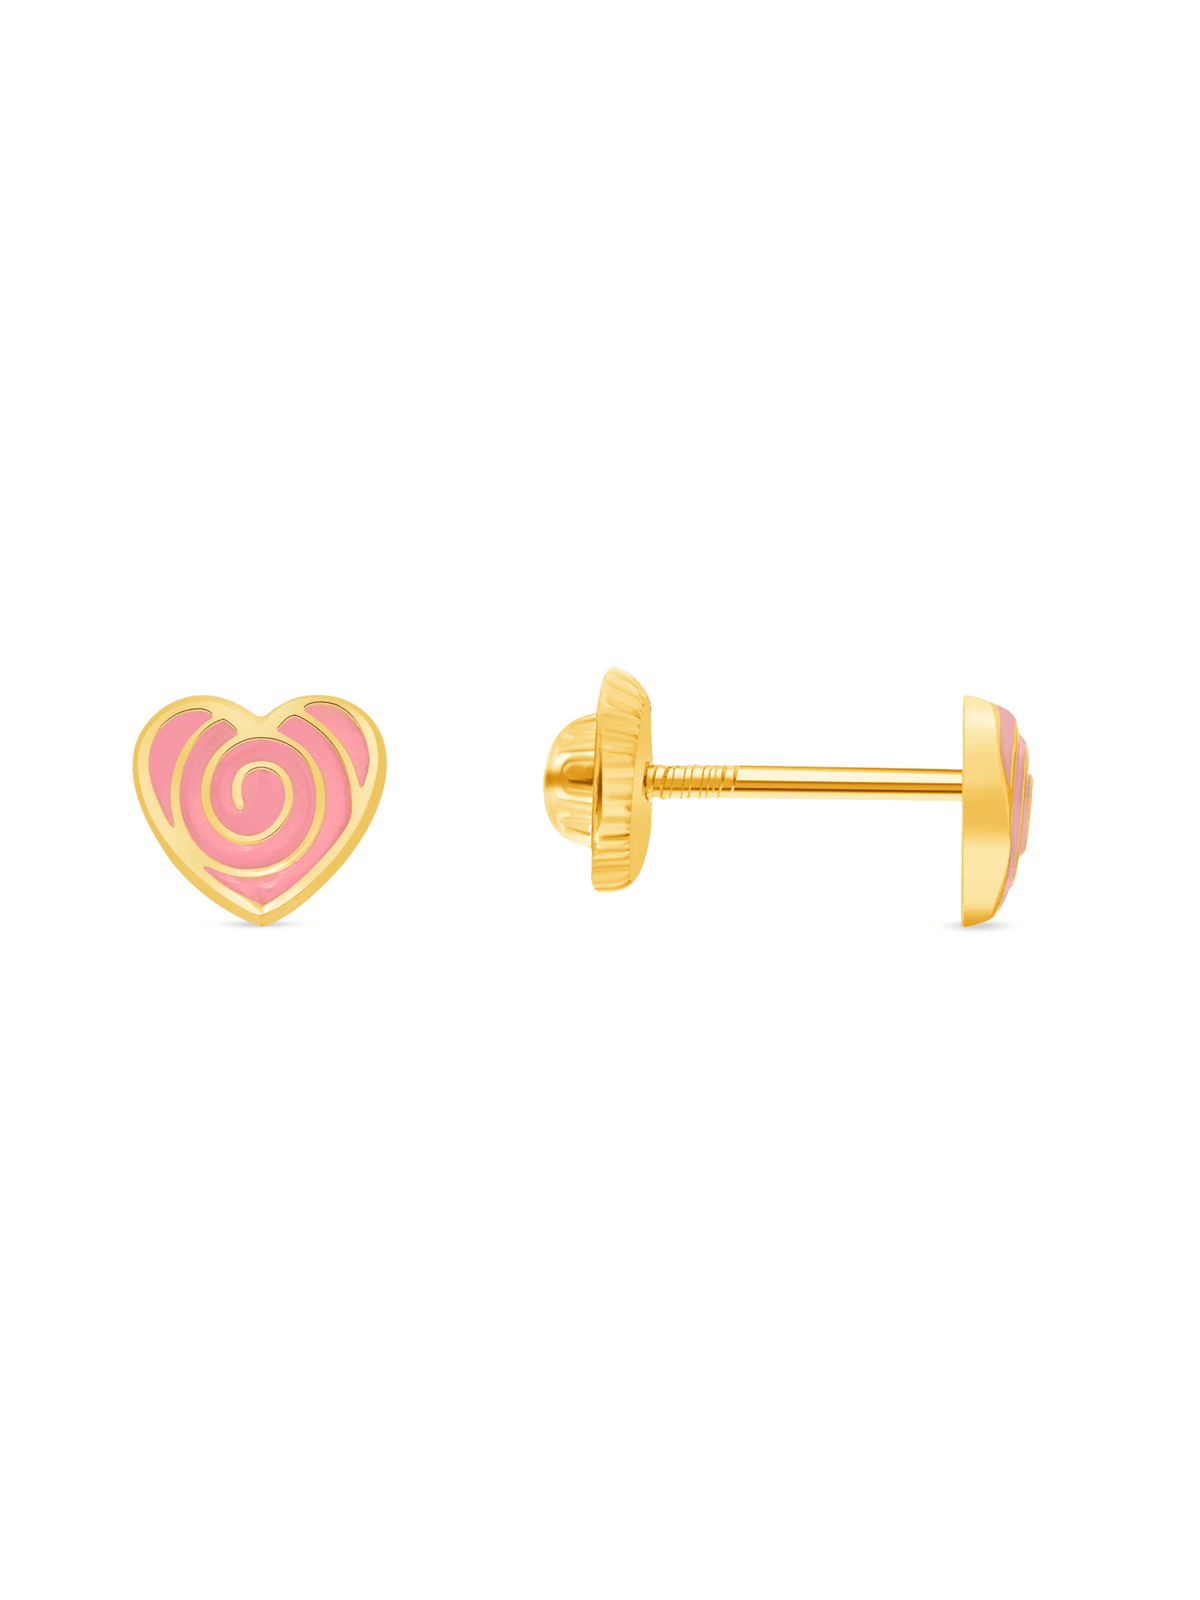 Rose heart kids stud earrings gold on white background